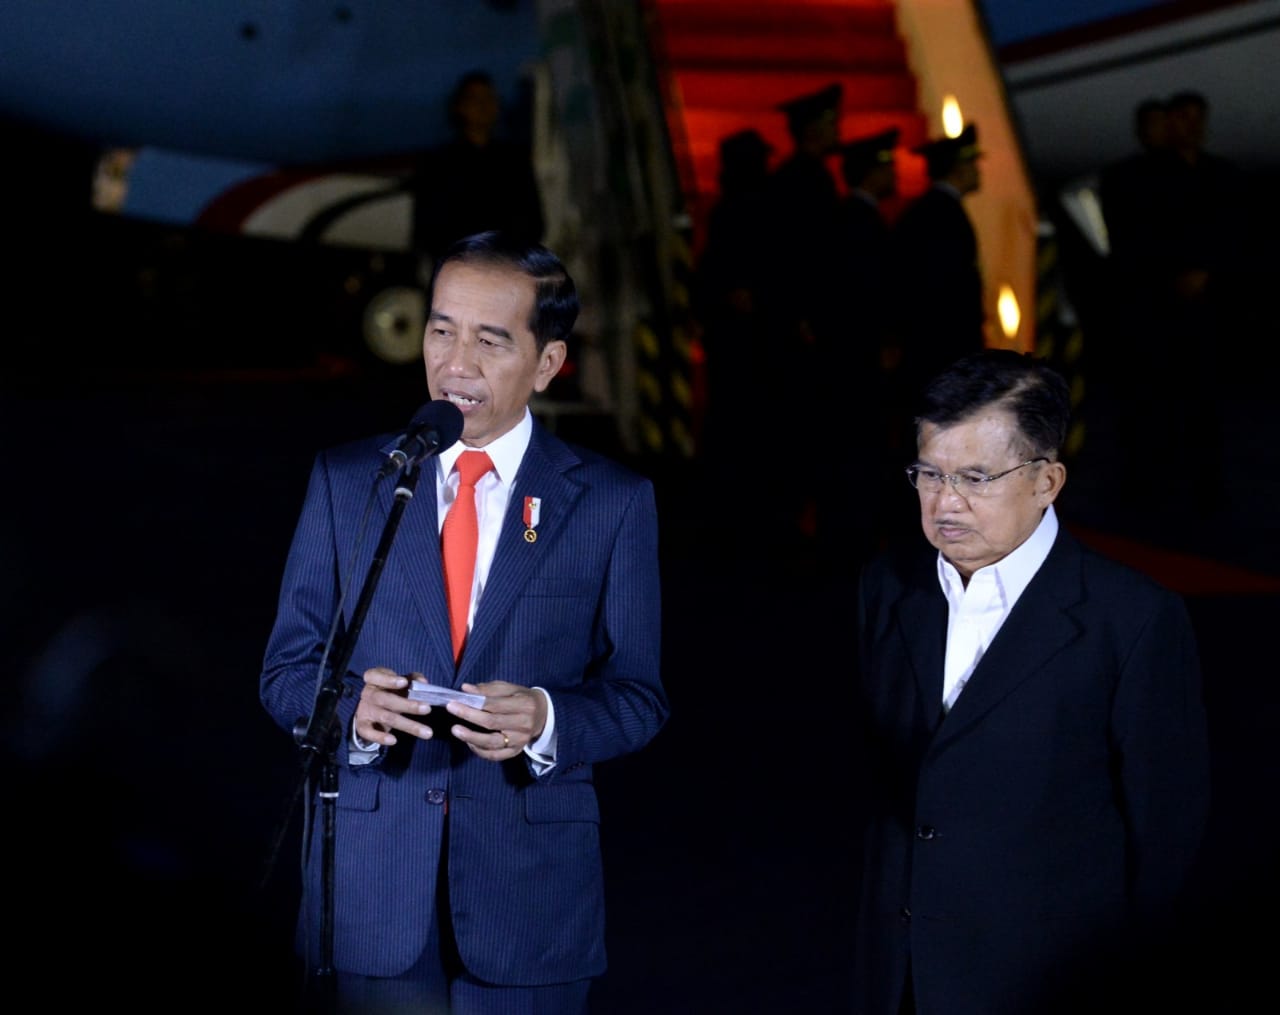 Presiden Jokowi memberikan keterangan pers bersama Wapres Jusuf Kalla di Lanud Halim, Kamis 27 Juni 2019. (Foto: Biro Pers Setpres)